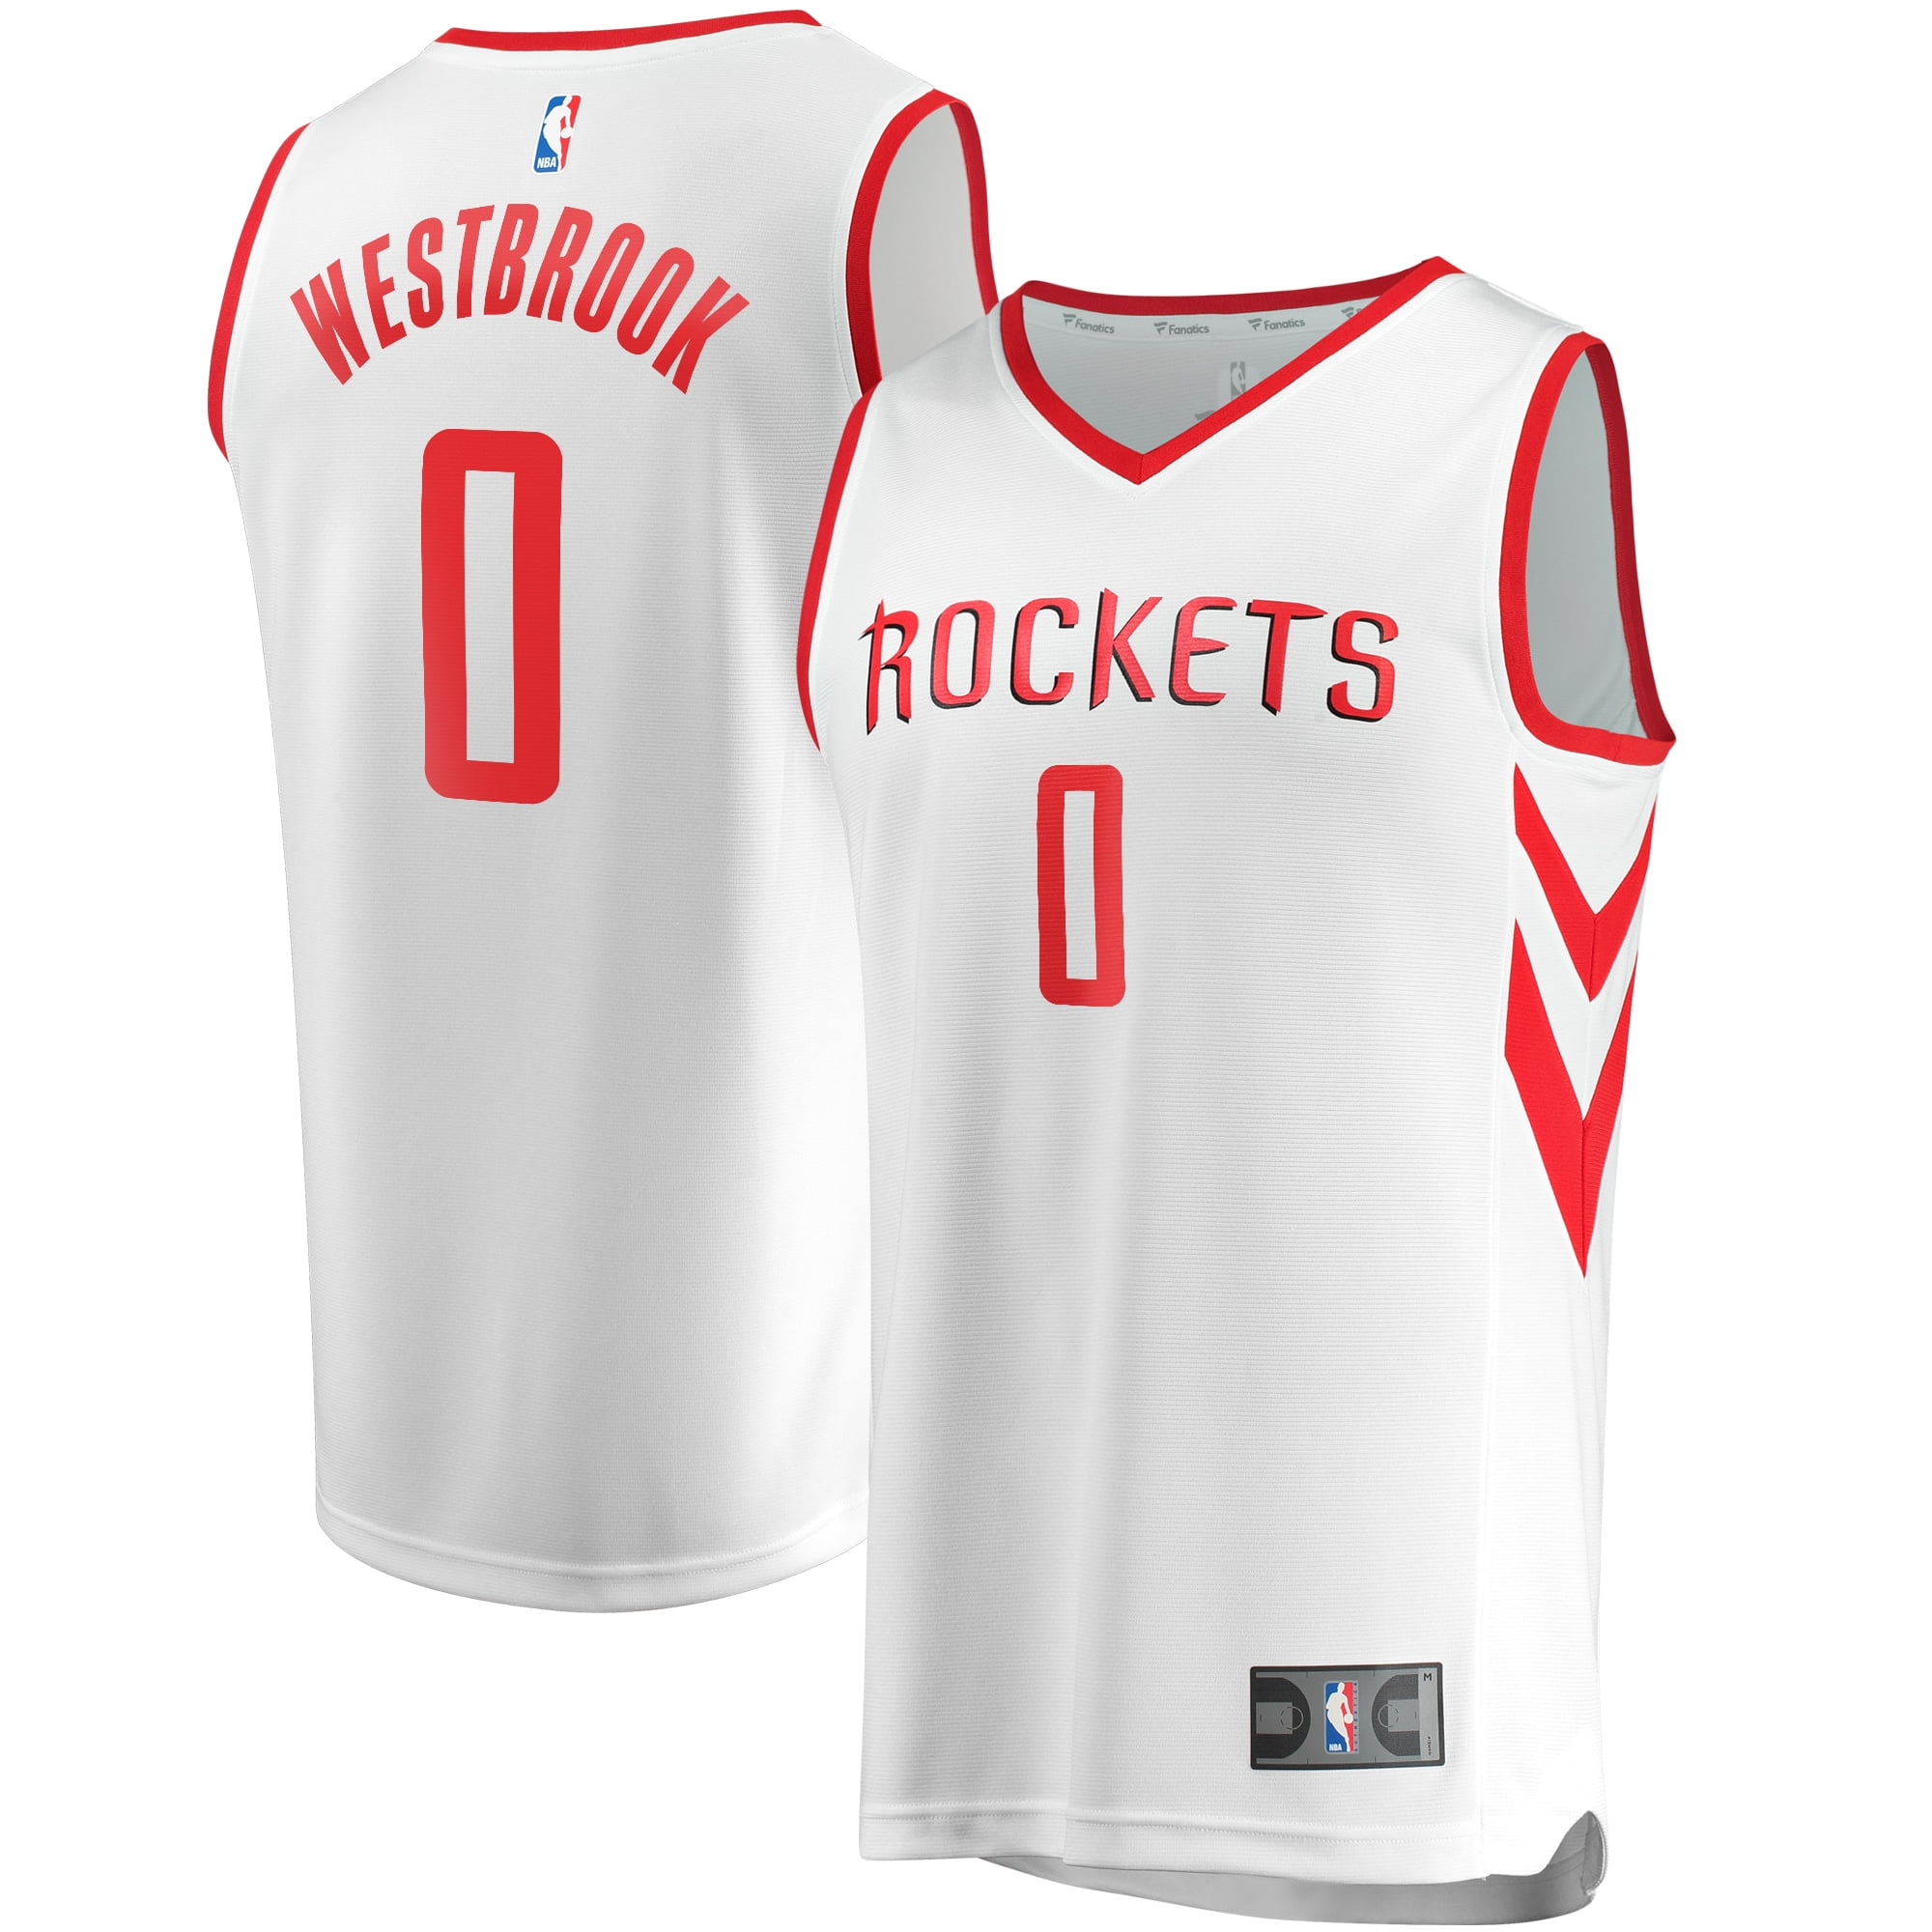 rockets russell westbrook jersey